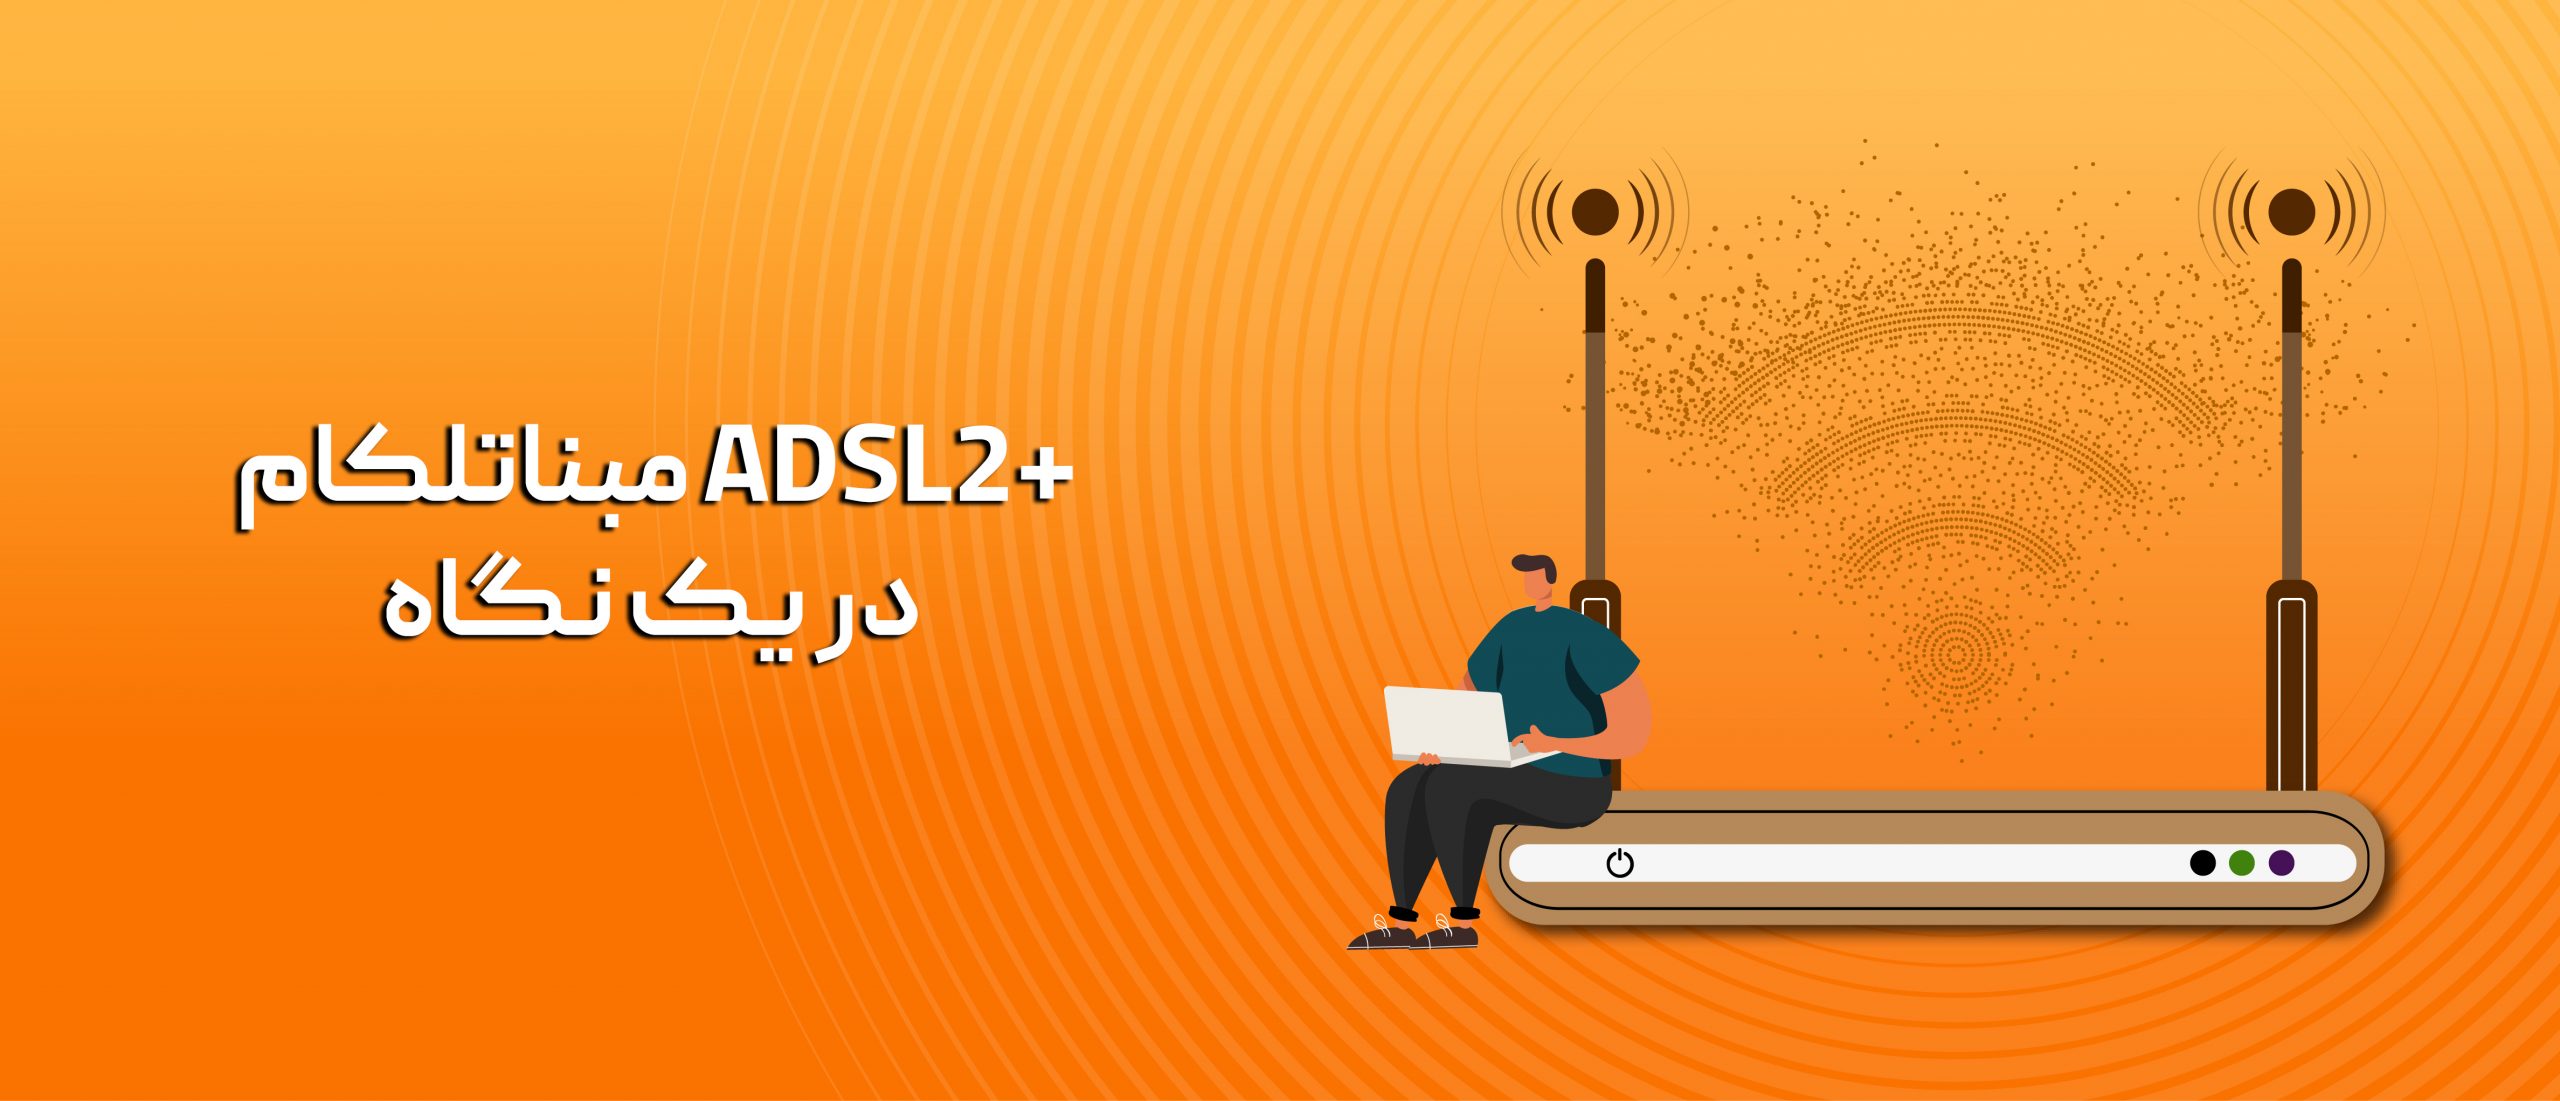 اینترنت پرسرعت ADSL2+ مبناتلکام